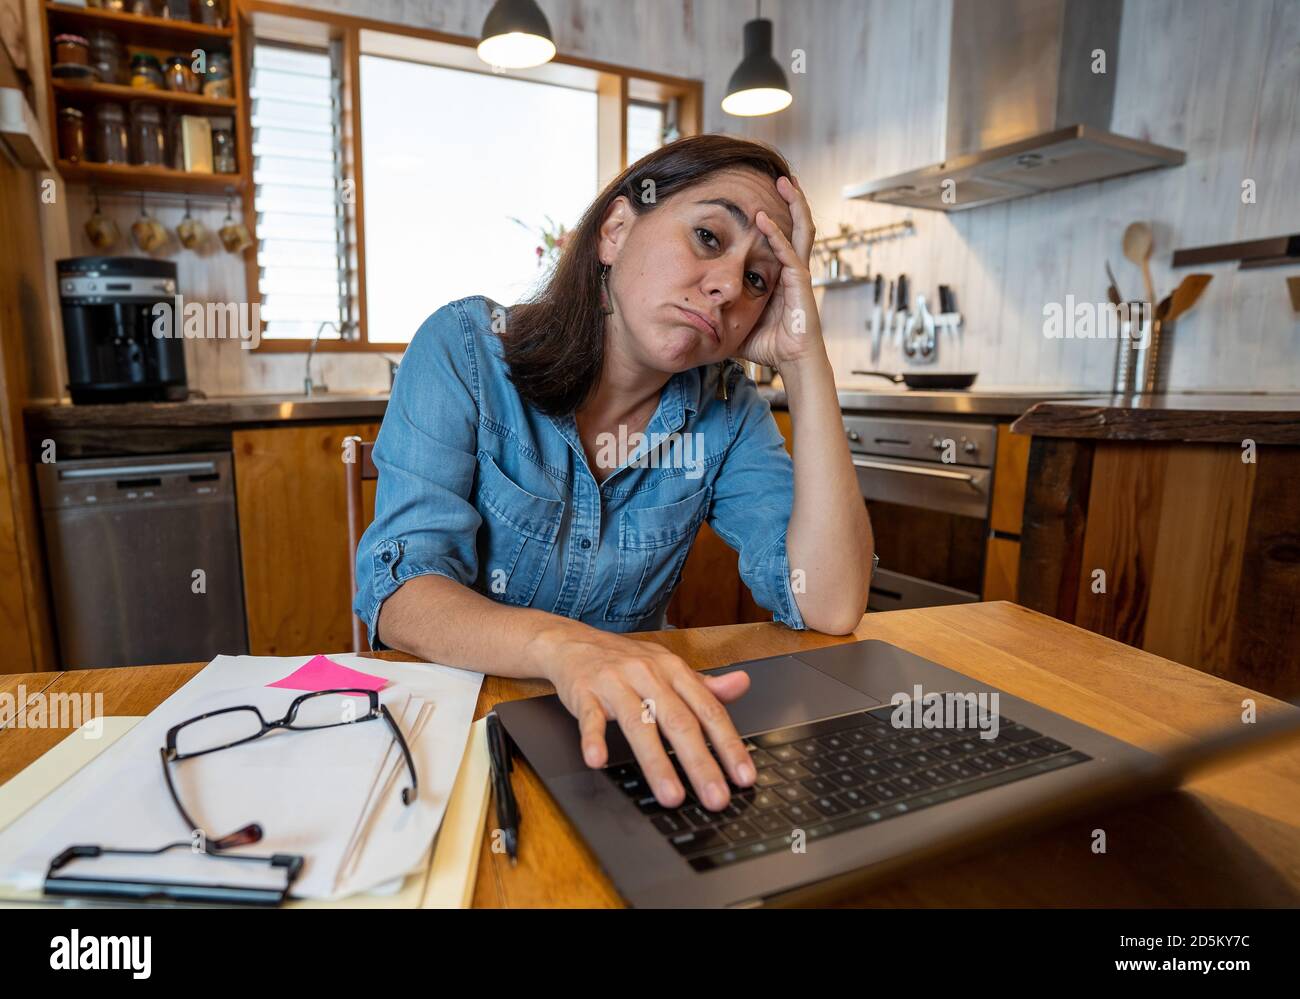 Gestresste Geschäftsfrau, die von zu Hause aus auf einem Laptop arbeitet und besorgt, müde und überfordert aussieht. Erschöpfte Frau, die während der sozialen Distanz fernarbeitet Stockfoto